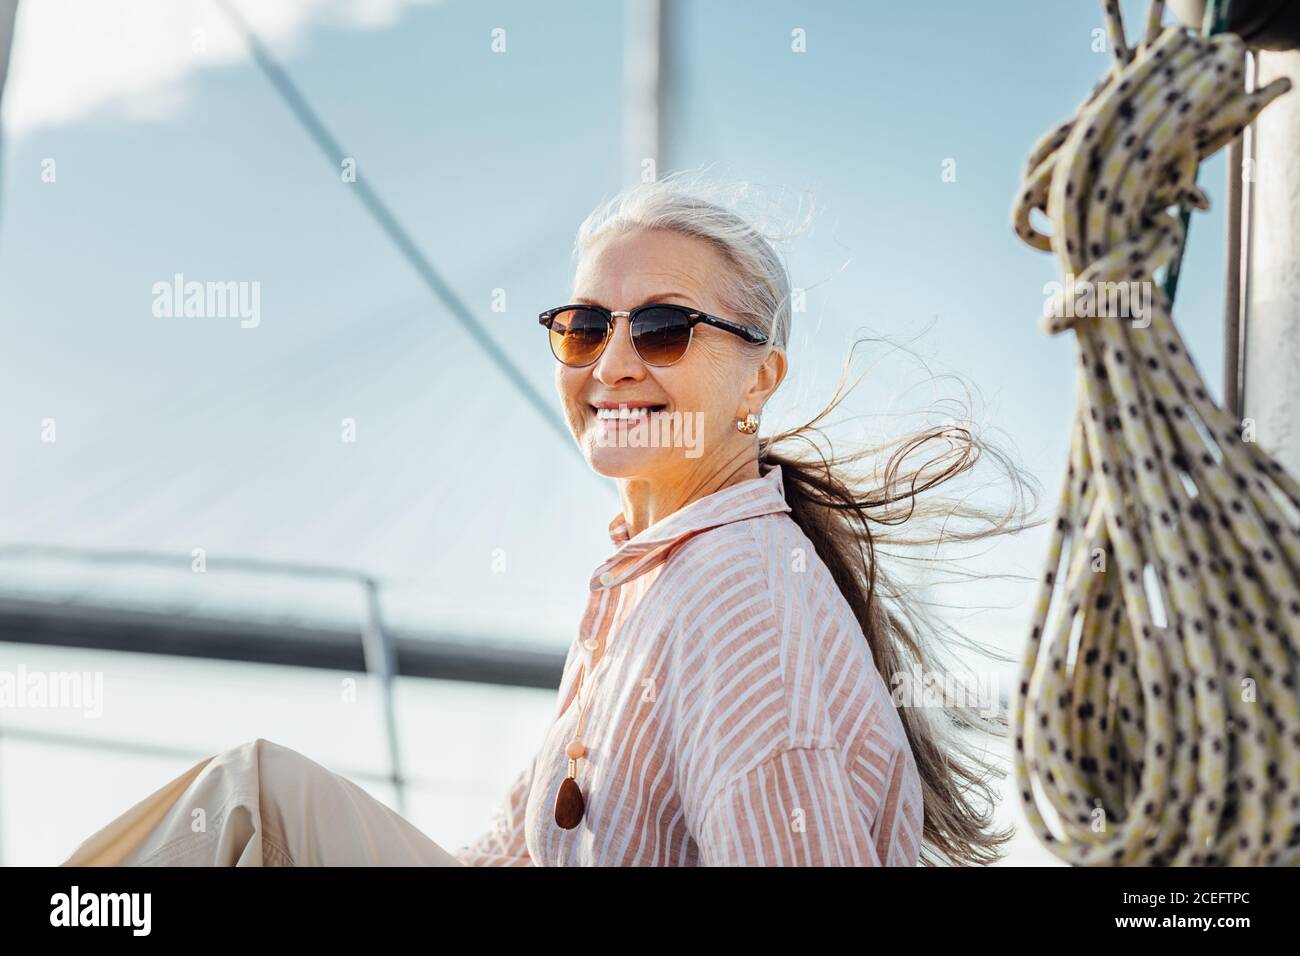 Ritratto di una donna matura felice che indossa occhiali da sole su uno yacht. Bella donna con capelli lunghi guardando la macchina fotografica mentre ti godi una gita in barca. Foto Stock